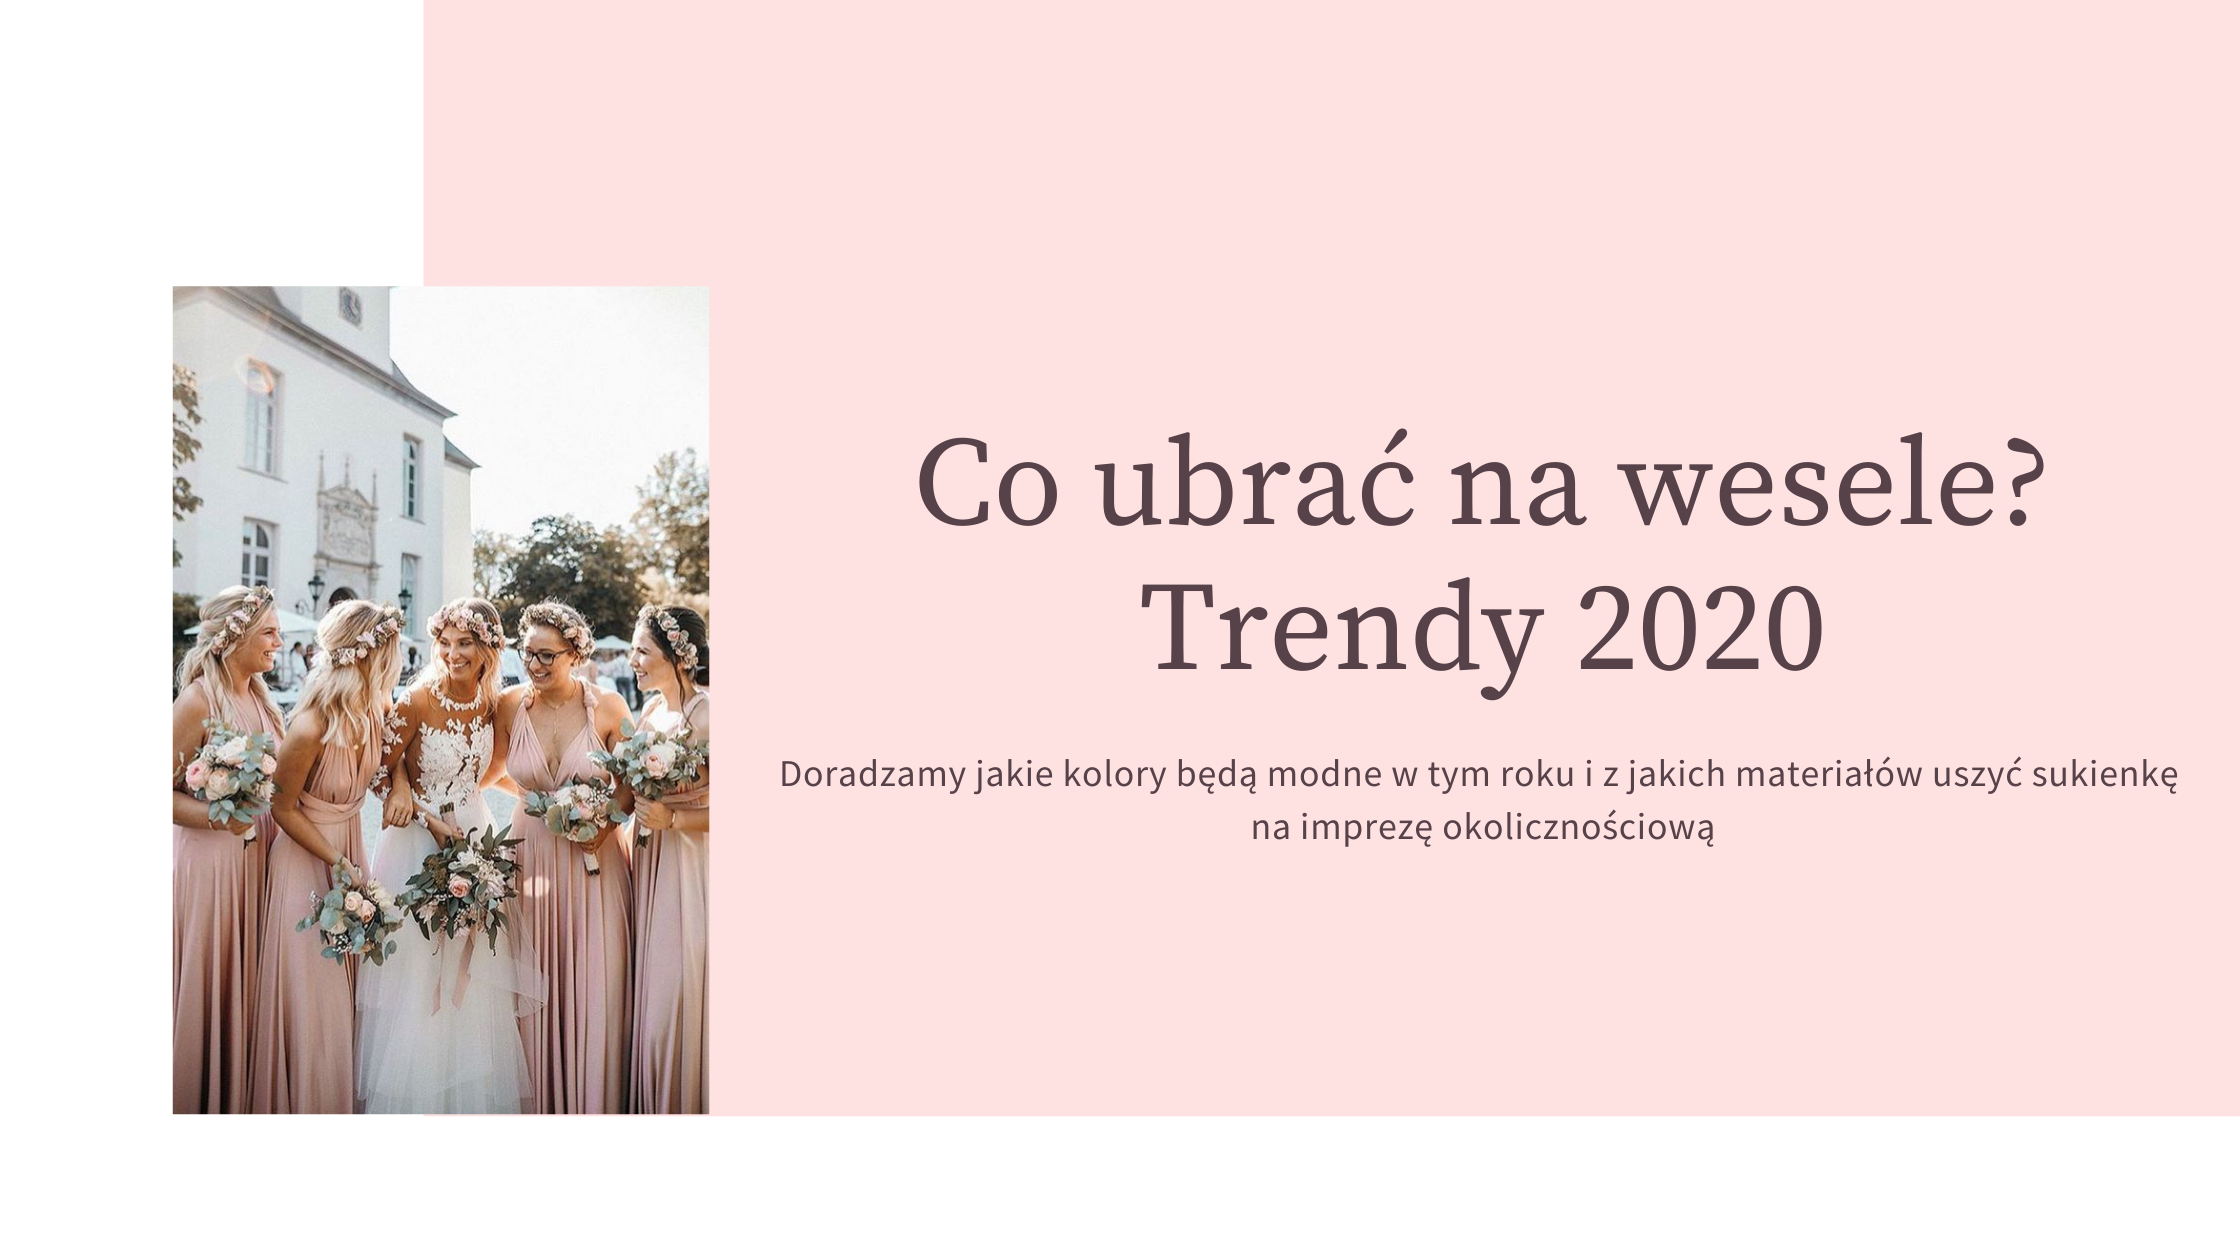 W czym wybrać się na wesele? Trendy 2020